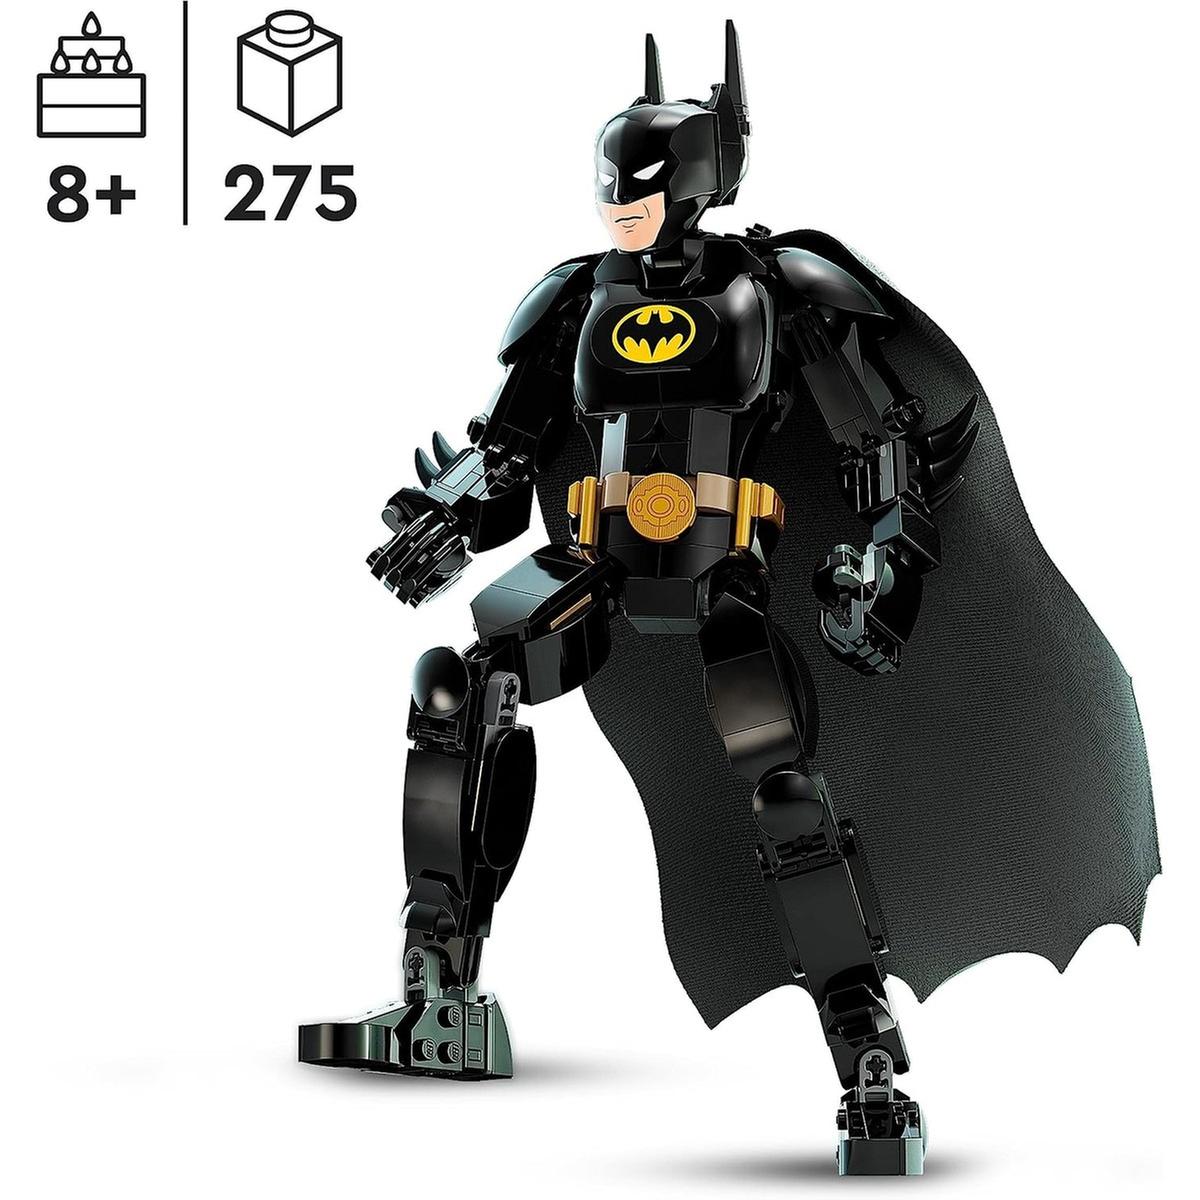 LEGO - Batman - Figura de construção Super-herói Batman, conjunto  colecionável LEGO DC 76259 | LEGO DC SUPER HEROES | Loja de brinquedos e  videojogos Online Toysrus